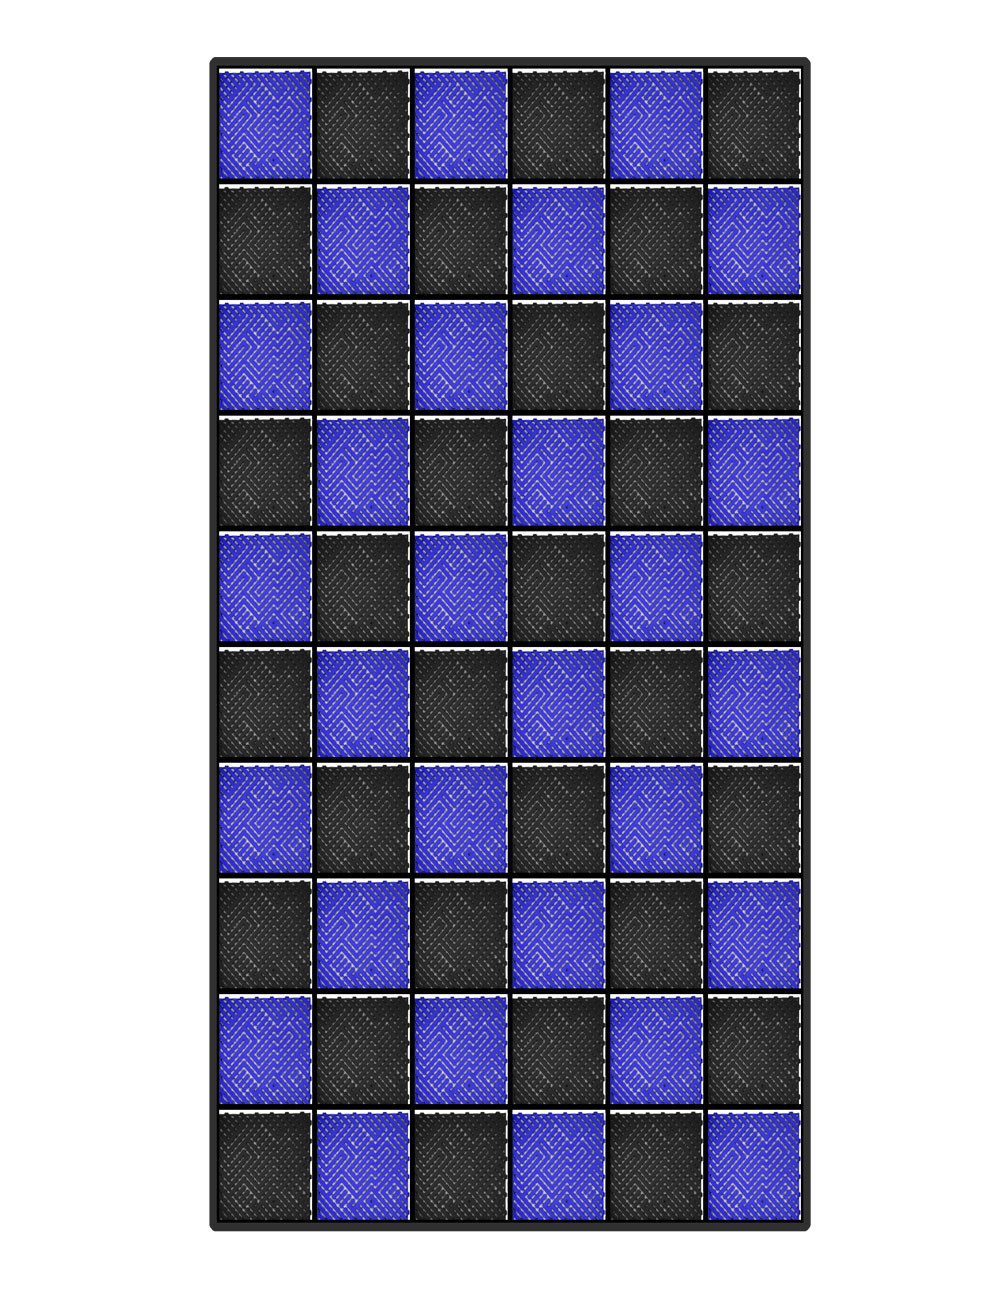 Kit dalles de sol damier pour garage - 15m² - 5 m x 3 m - Bleu et noir